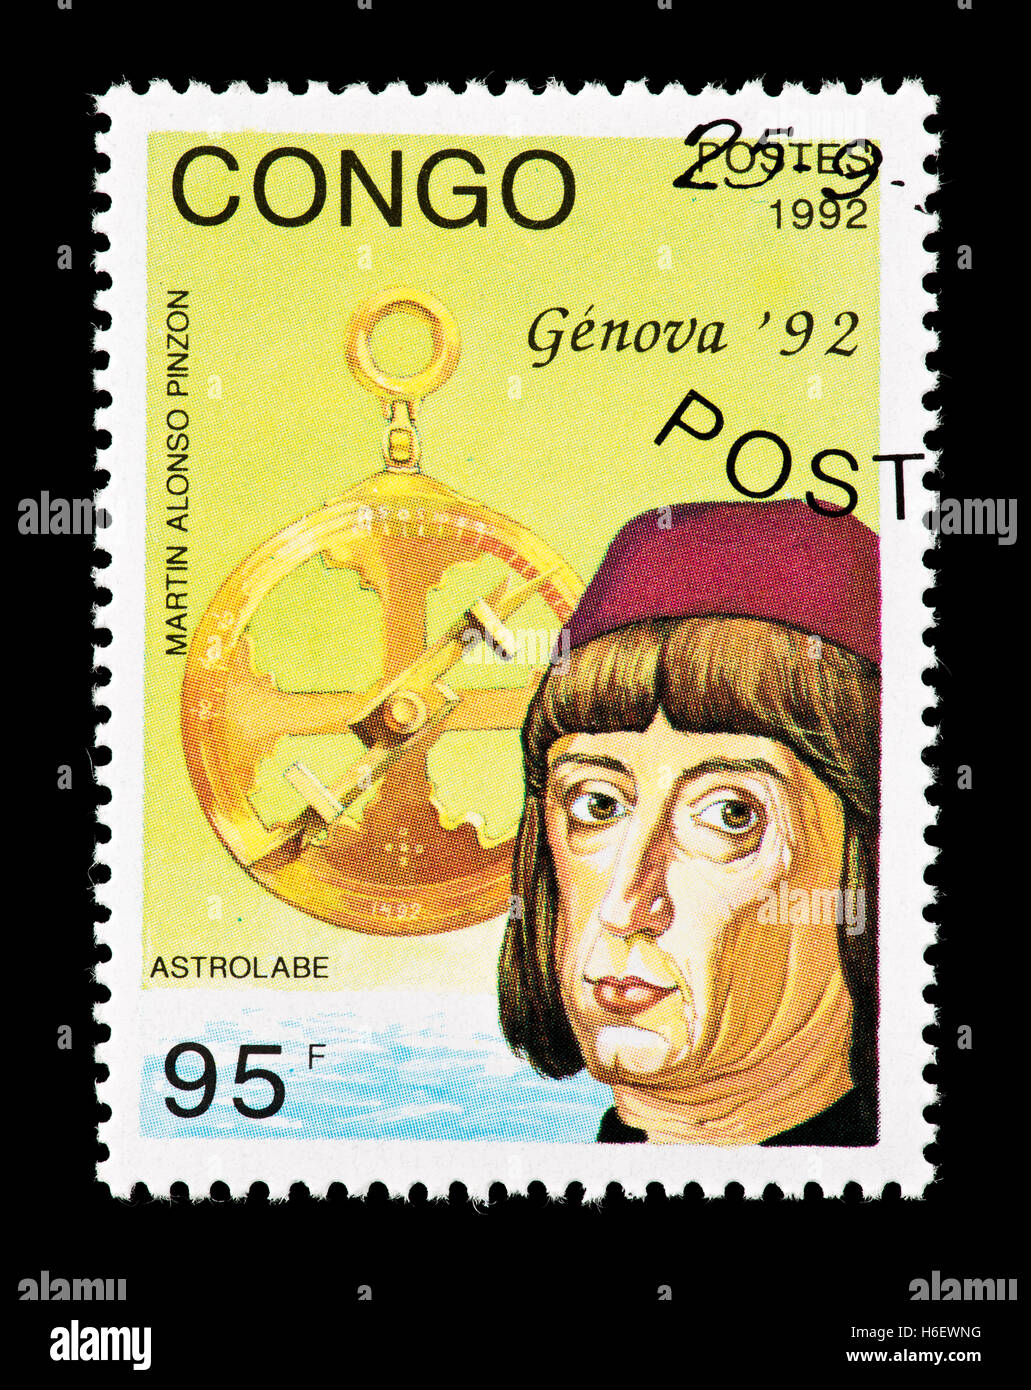 Briefmarke aus dem Kongo, Martin Alonso Pinzon, Kapitän der Pinta und ein Astrolab darstellen. Stockfoto